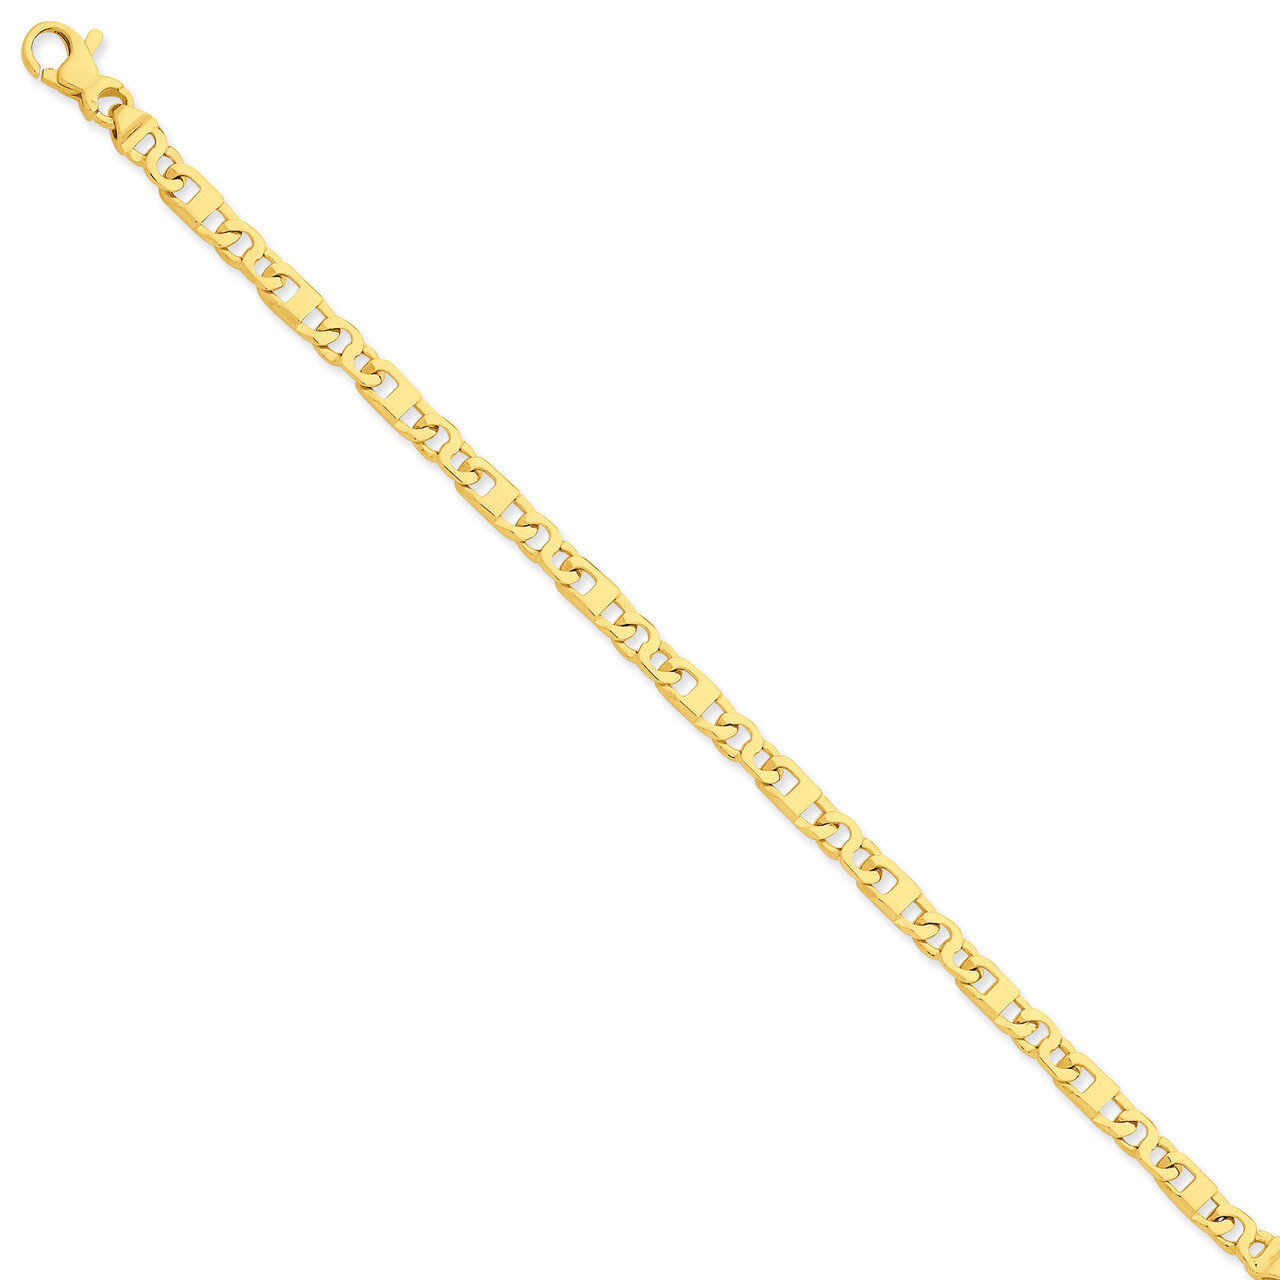 Fancy Link Chain 24 Inch 14k Gold LK669-24